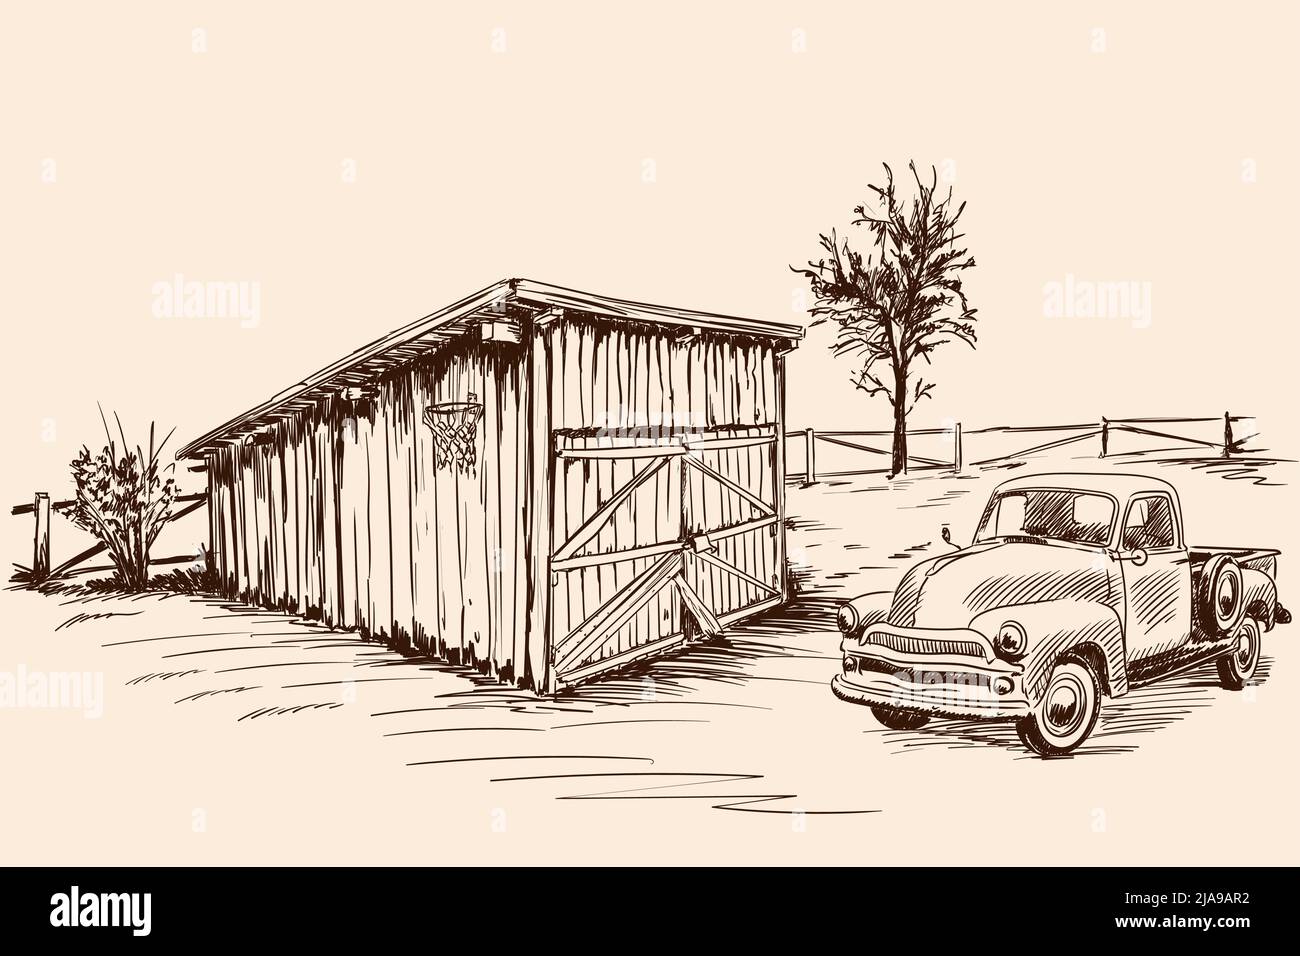 Ländliche Landschaft mit einem Bauernwagen neben einer alten Scheune mit geschlossenem Tor. Handskizze auf beigefarbenem Hintergrund. Stock Vektor